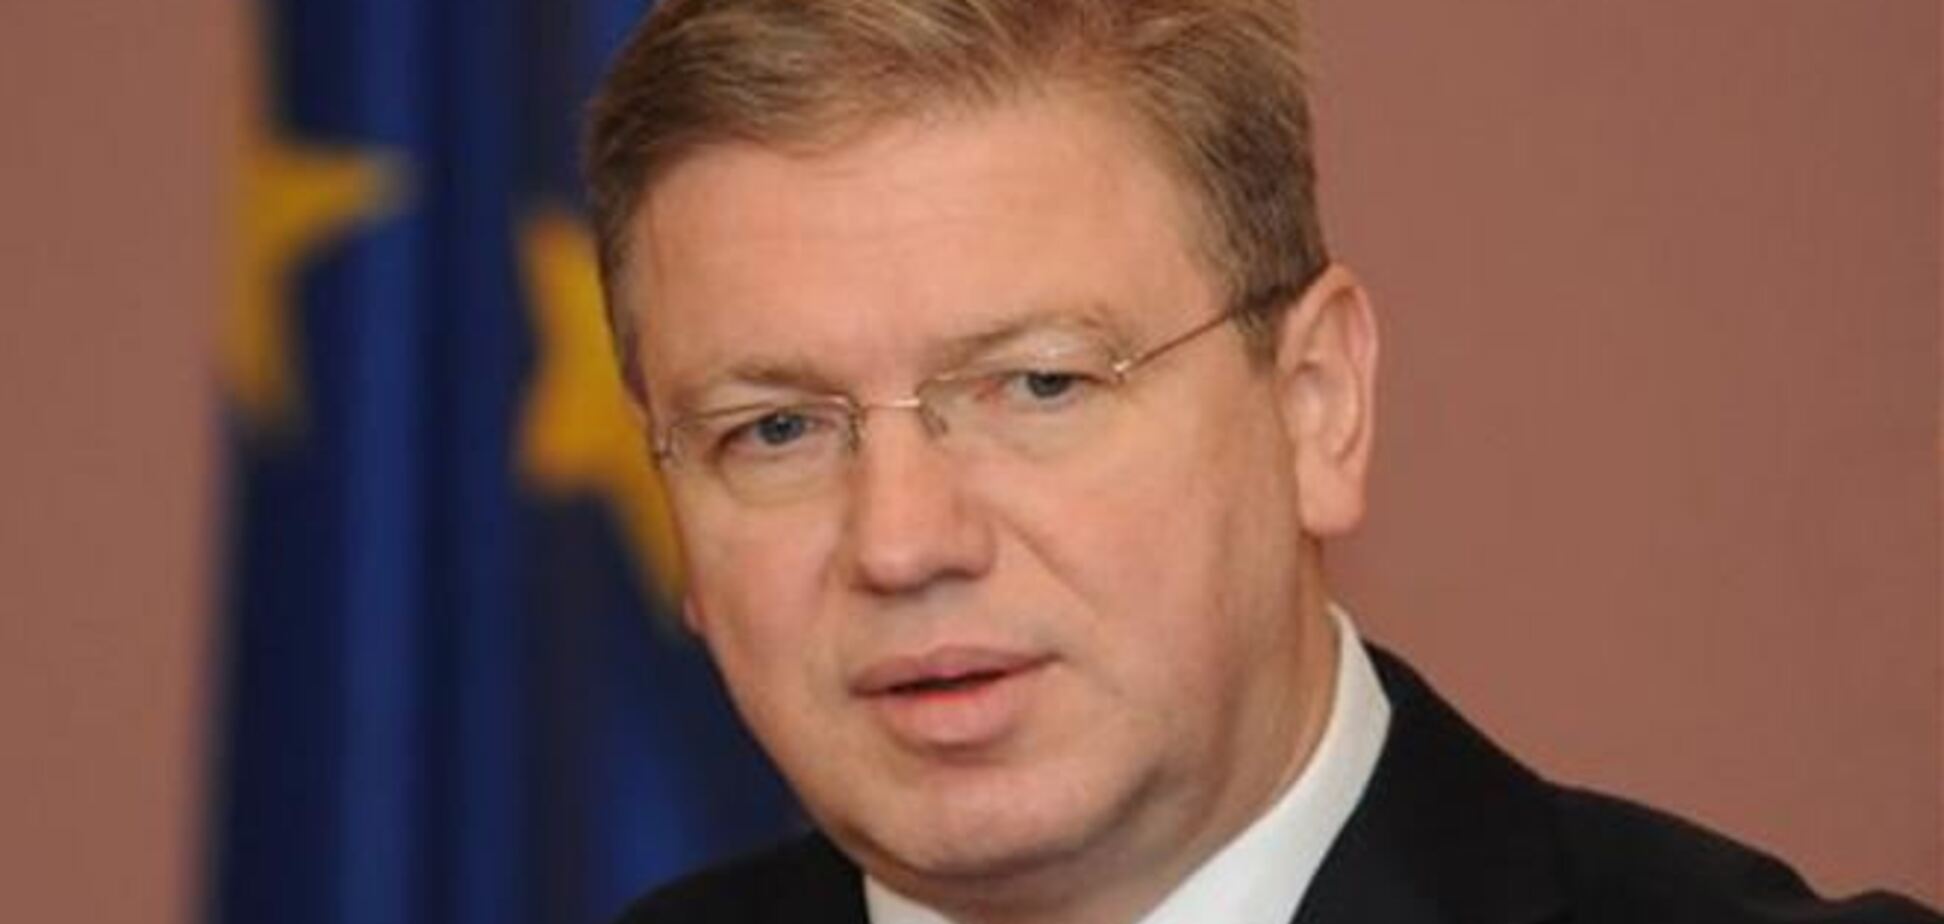 Фюле: підготовка підписання асоціації відновить довіру між Україною та ЄС